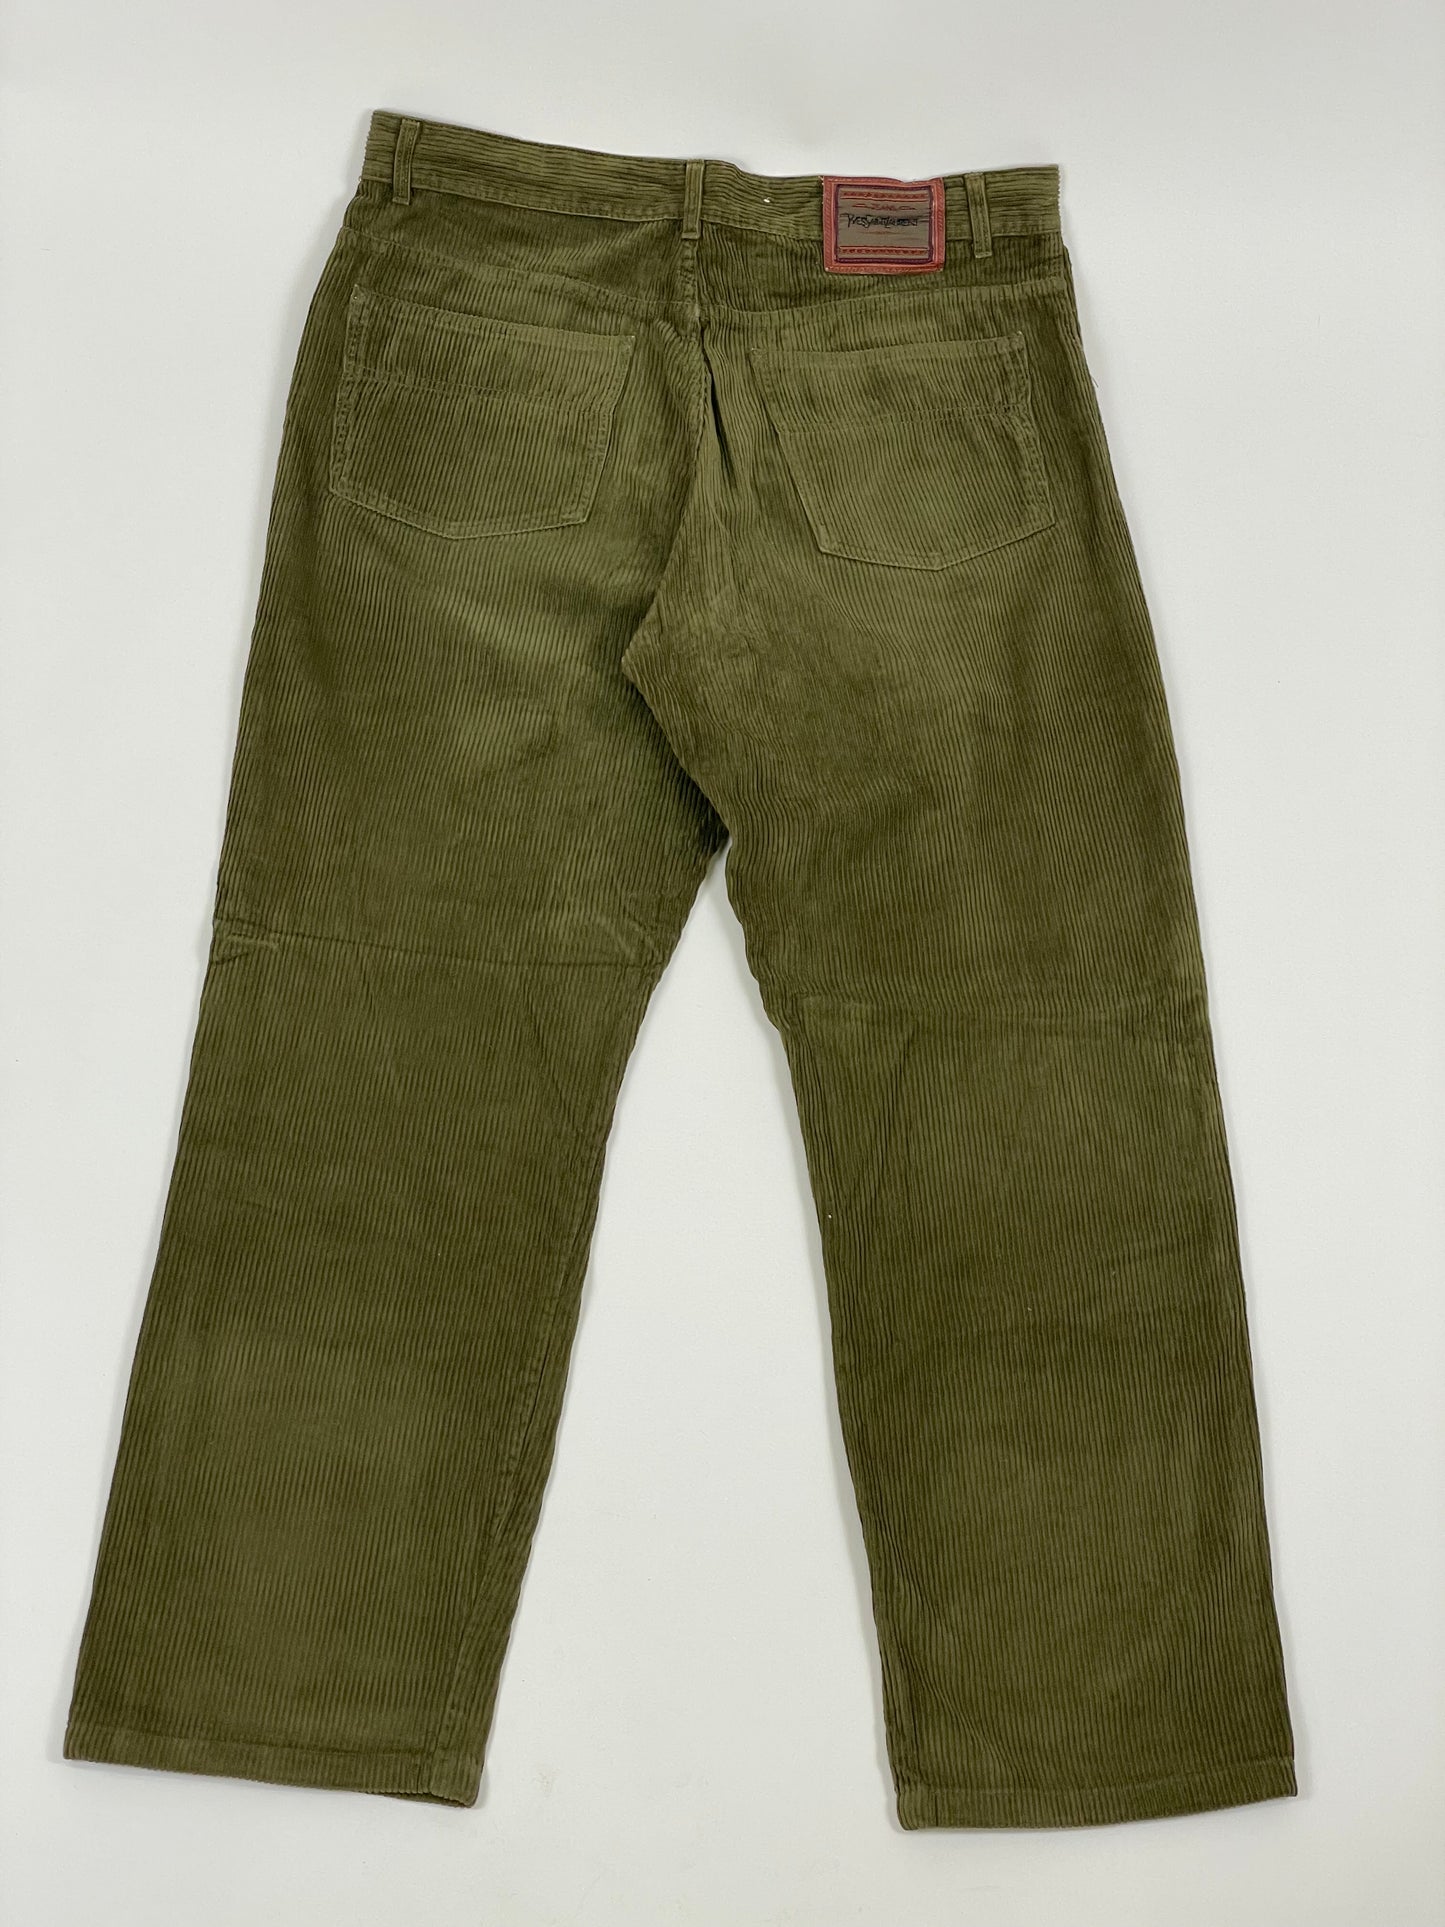 Pantalone Yves Saint Laurent 1970s